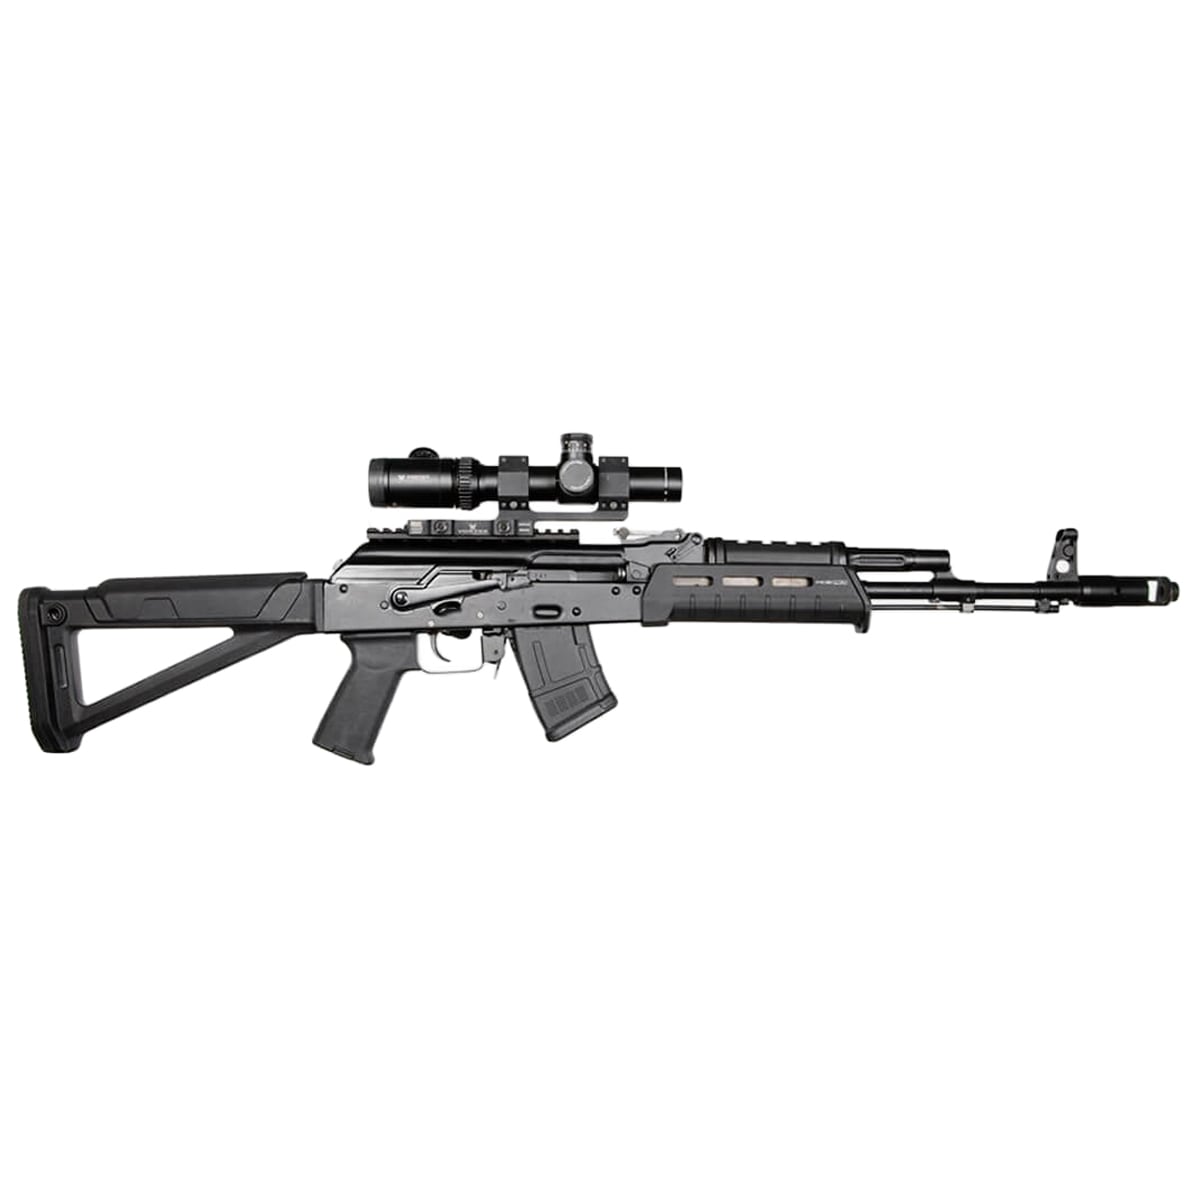 Магазин на 10 патронів Magpul PMAG 10 AK/AKM MOE кал. 7.62 x 39 мм для гвинтівок AK/AKM - Black